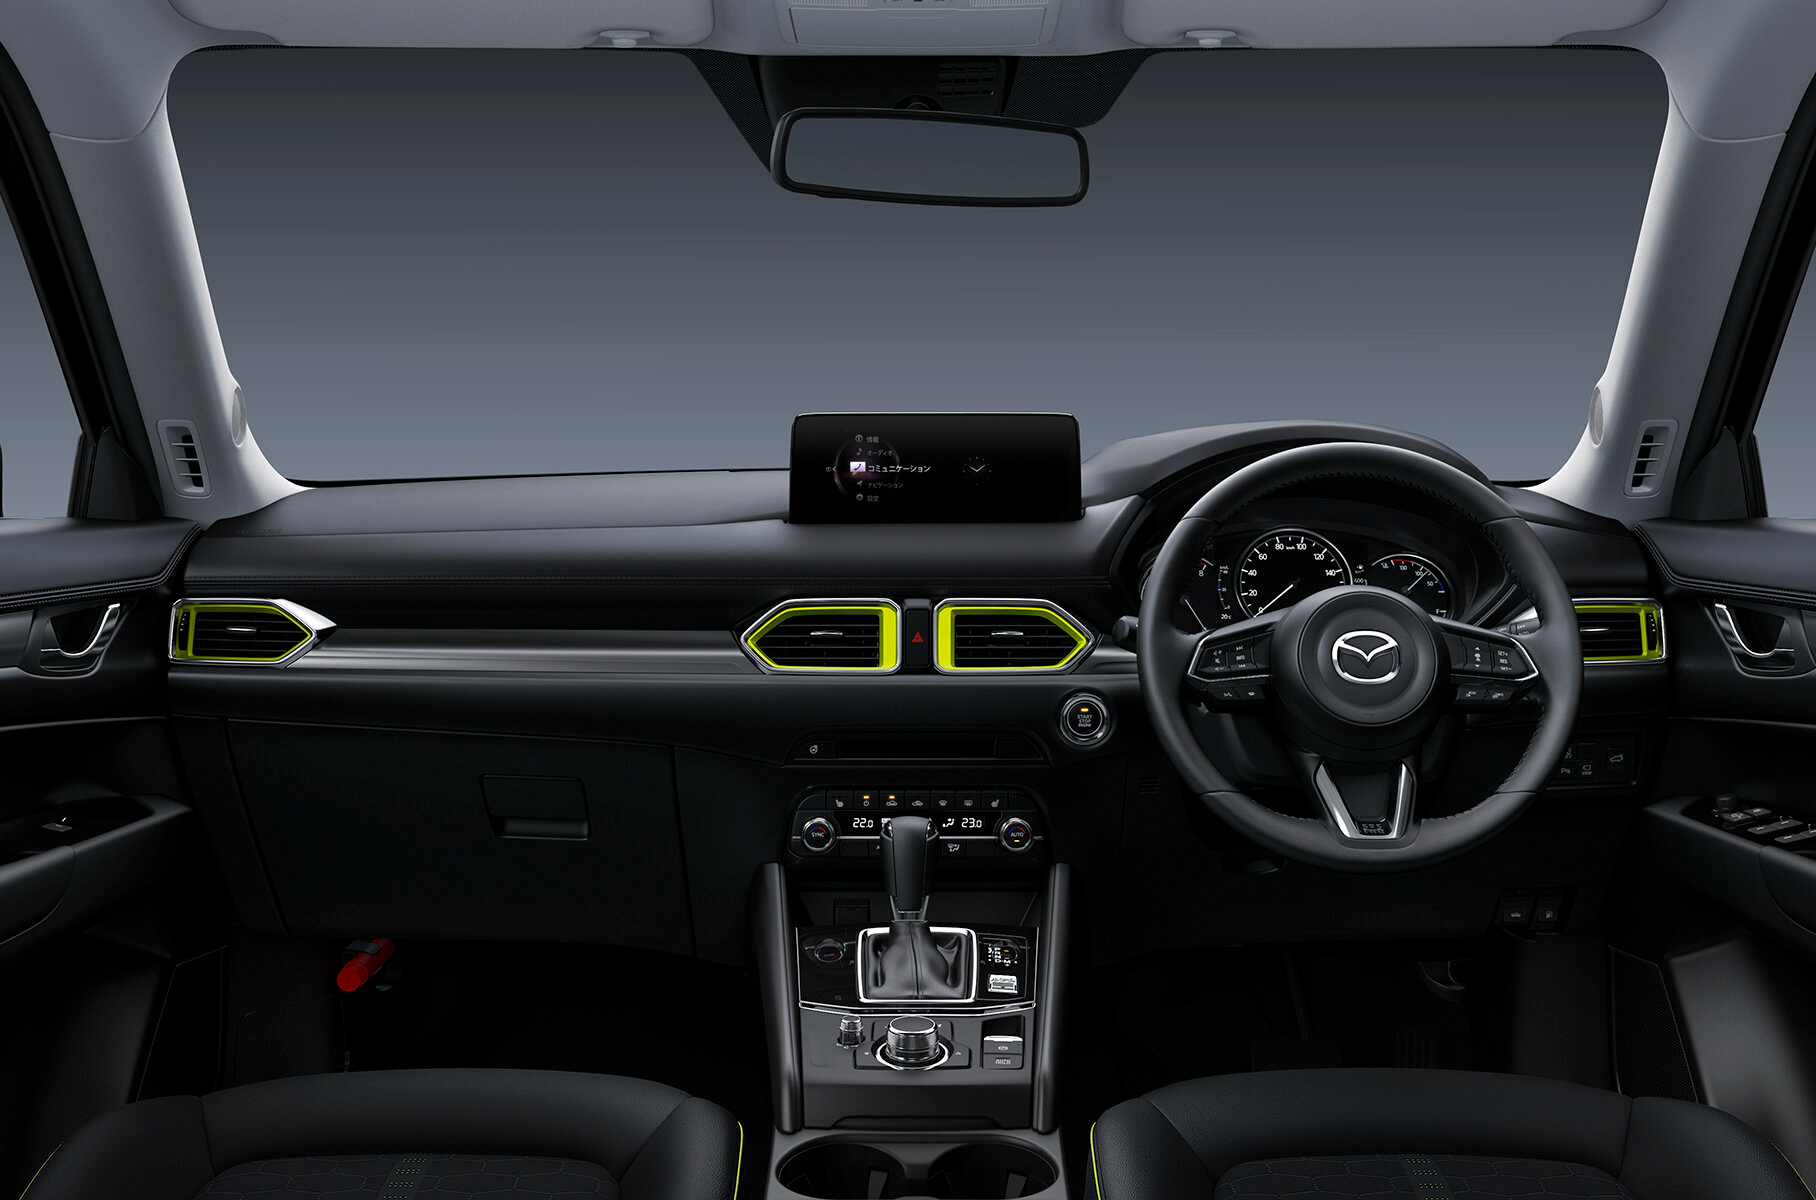 Объявлена стоимость обновленного Mazda CX-5